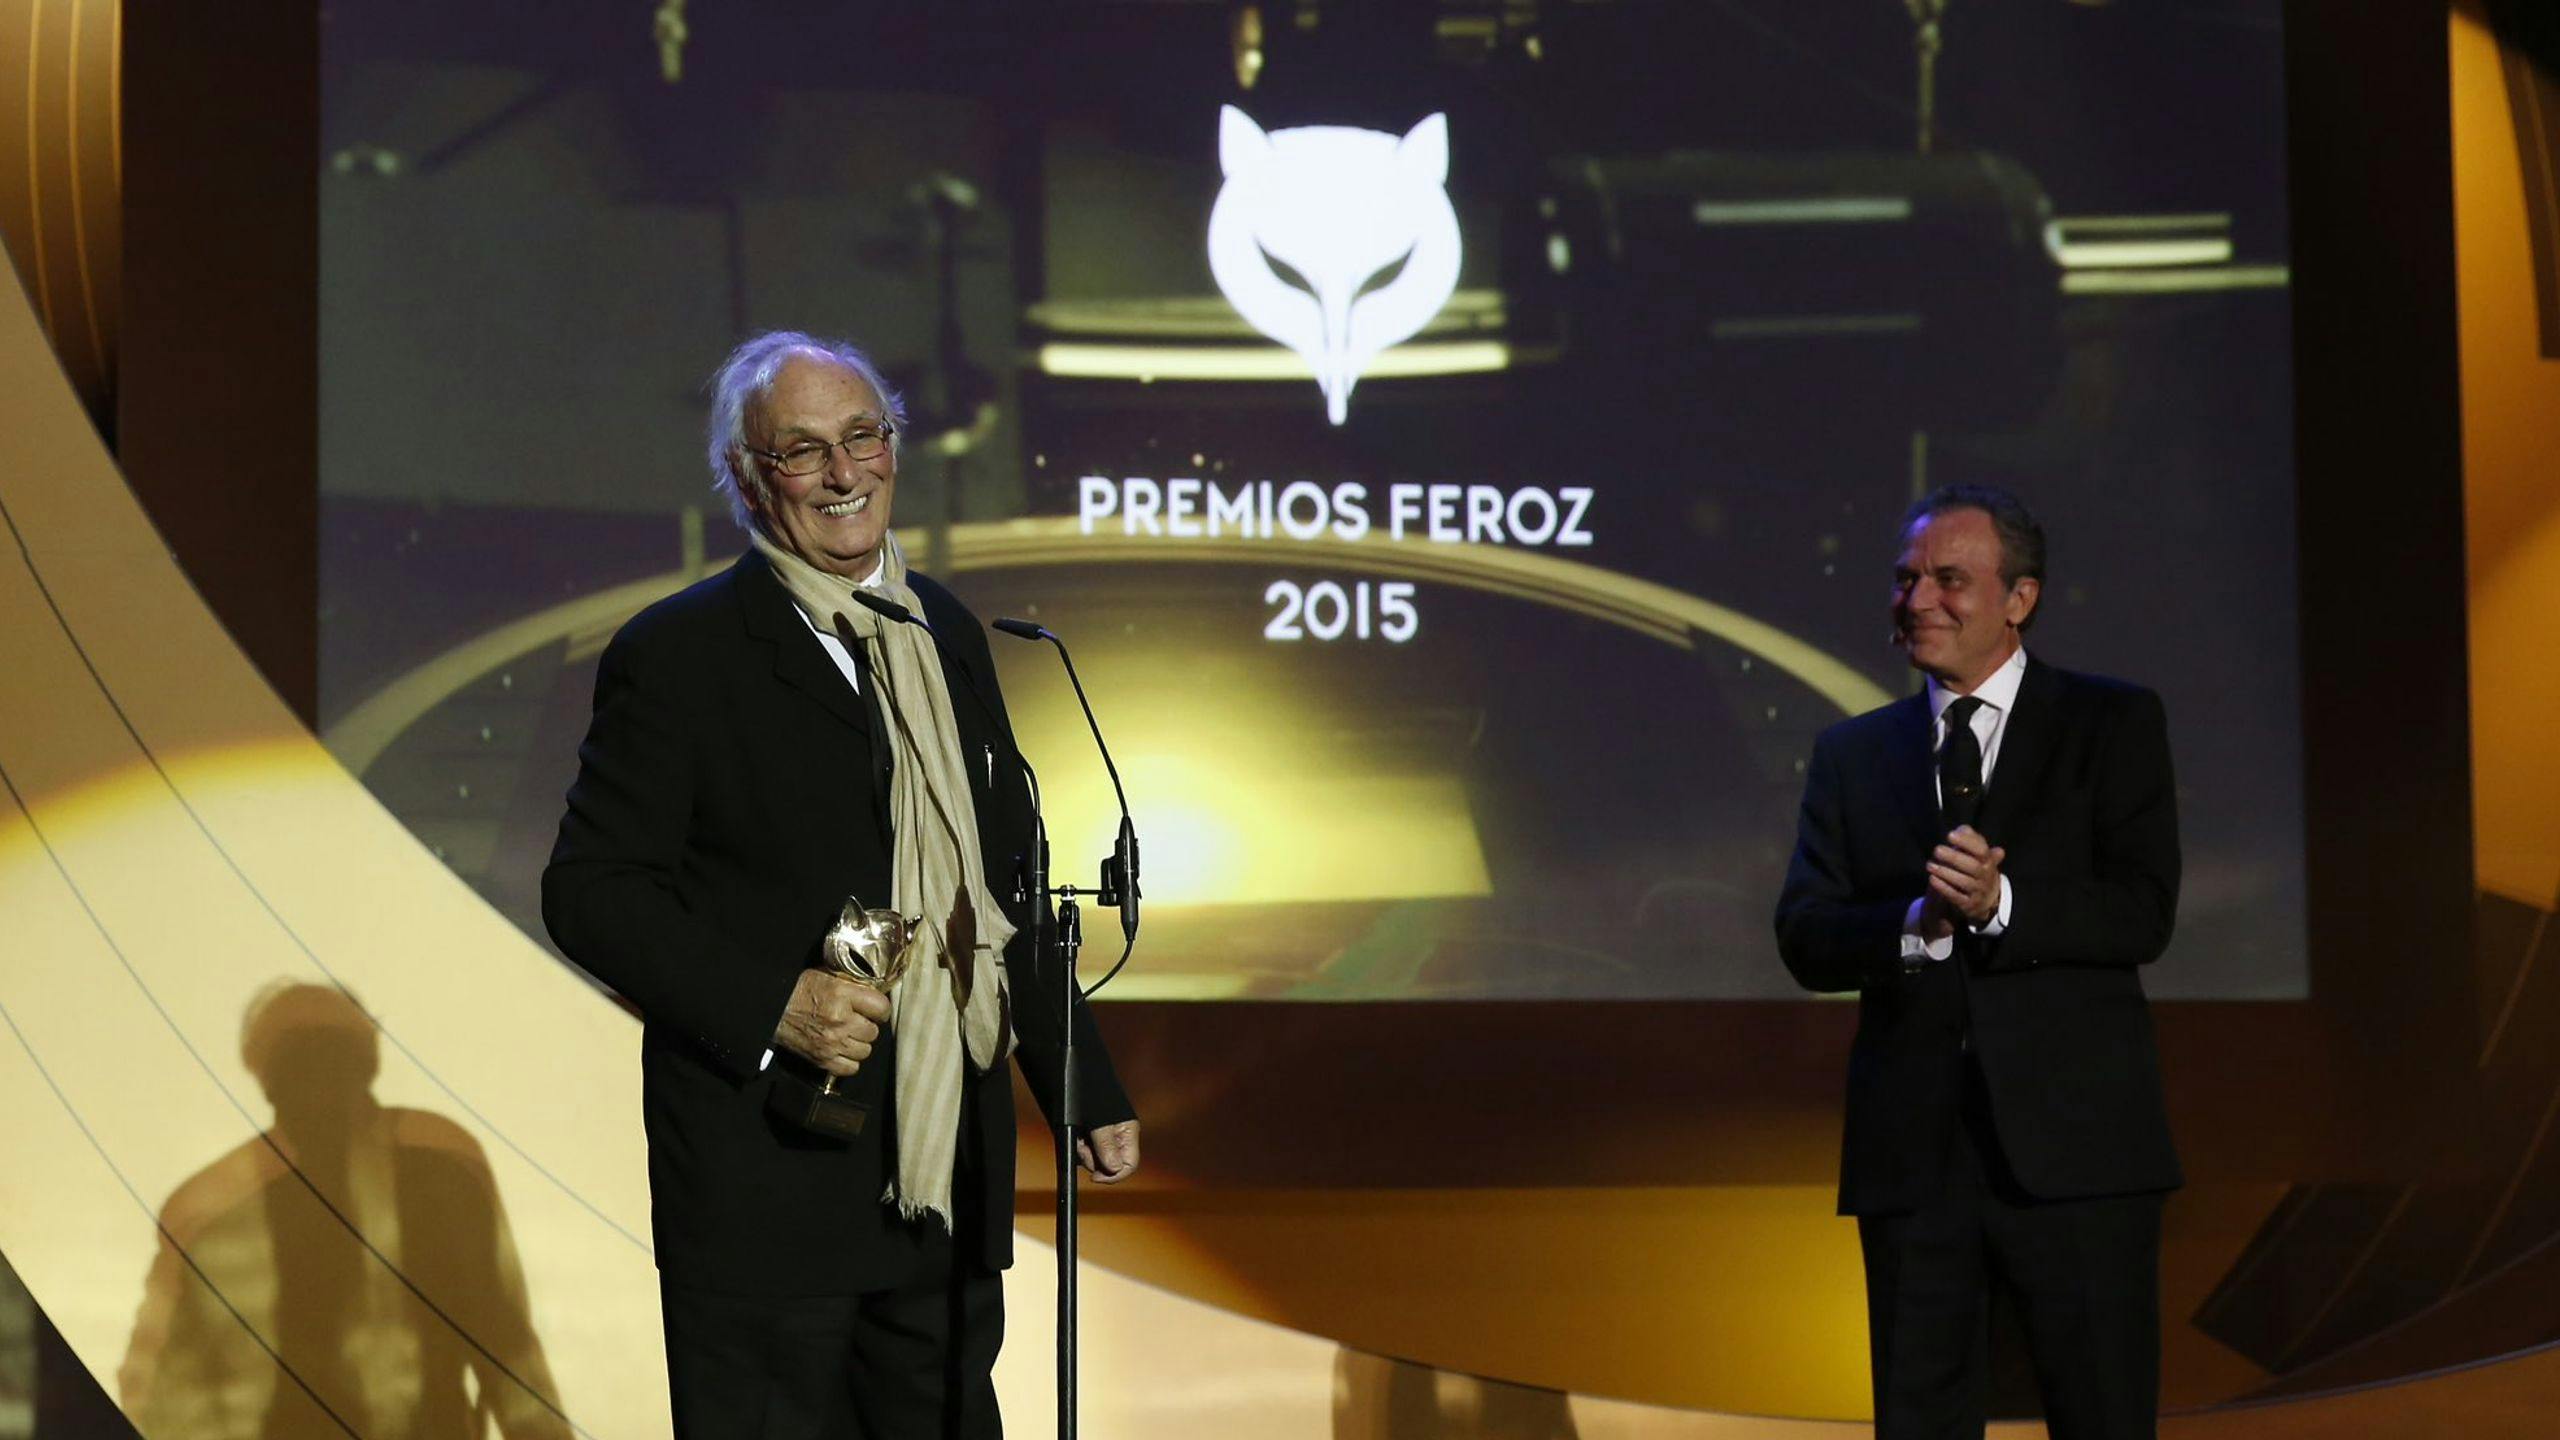 El director Carlos Saura recoge, de manos de Jose Coronado, el premio Feroz de Honor 2015 en Madrid